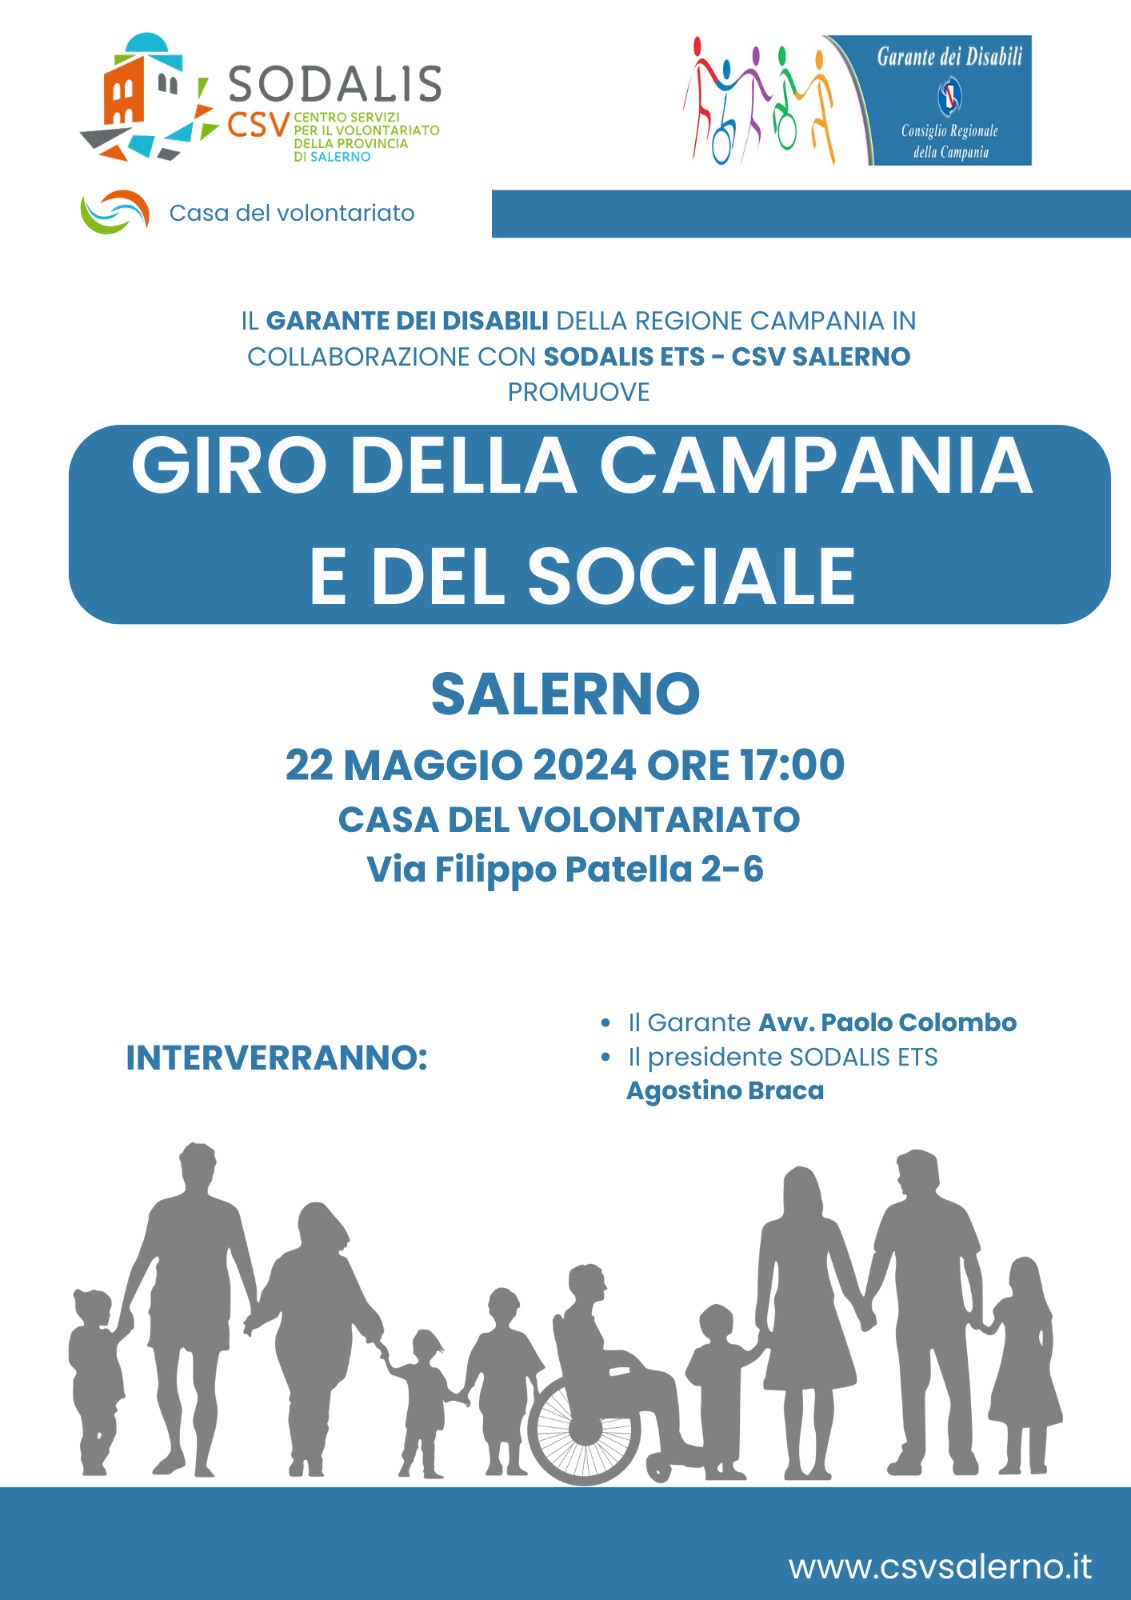 Salerno: Sodalis CSV, Giro della Campania e del Sociale